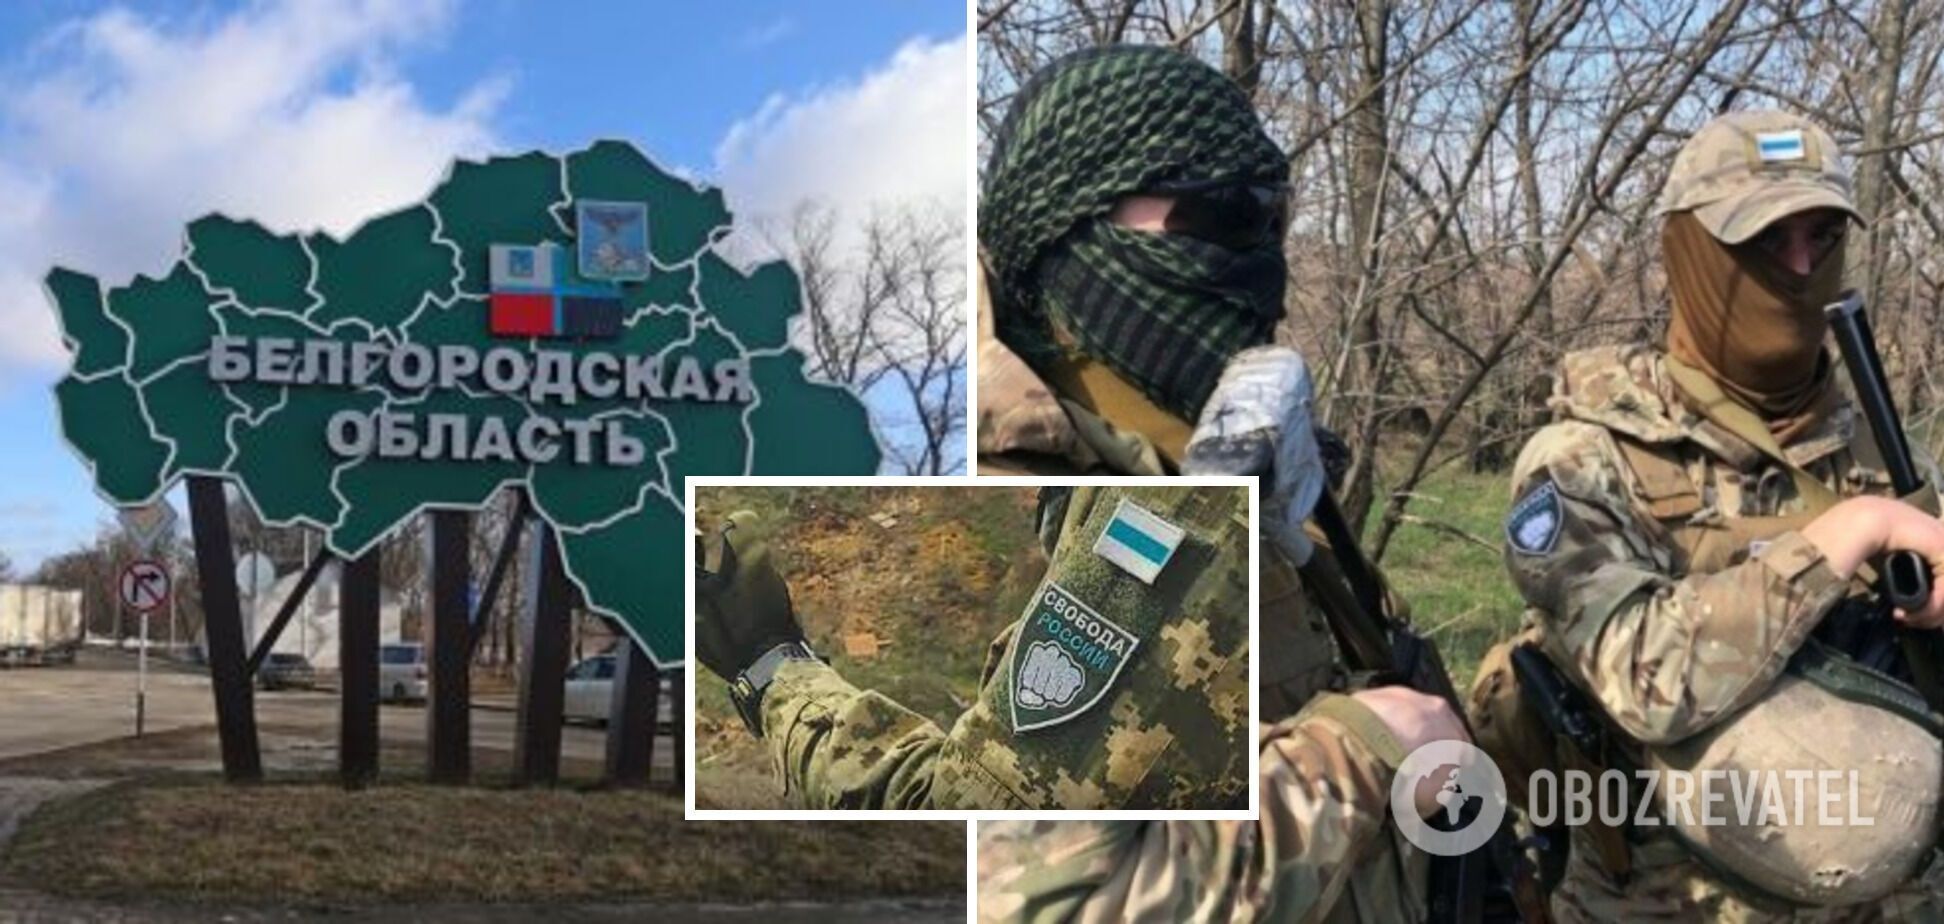 Экс-офицер ФСБ, актер, музыкант: идентифицированы четыре добровольца РФ, прорыв которых в Белгородскую область вызвал панику